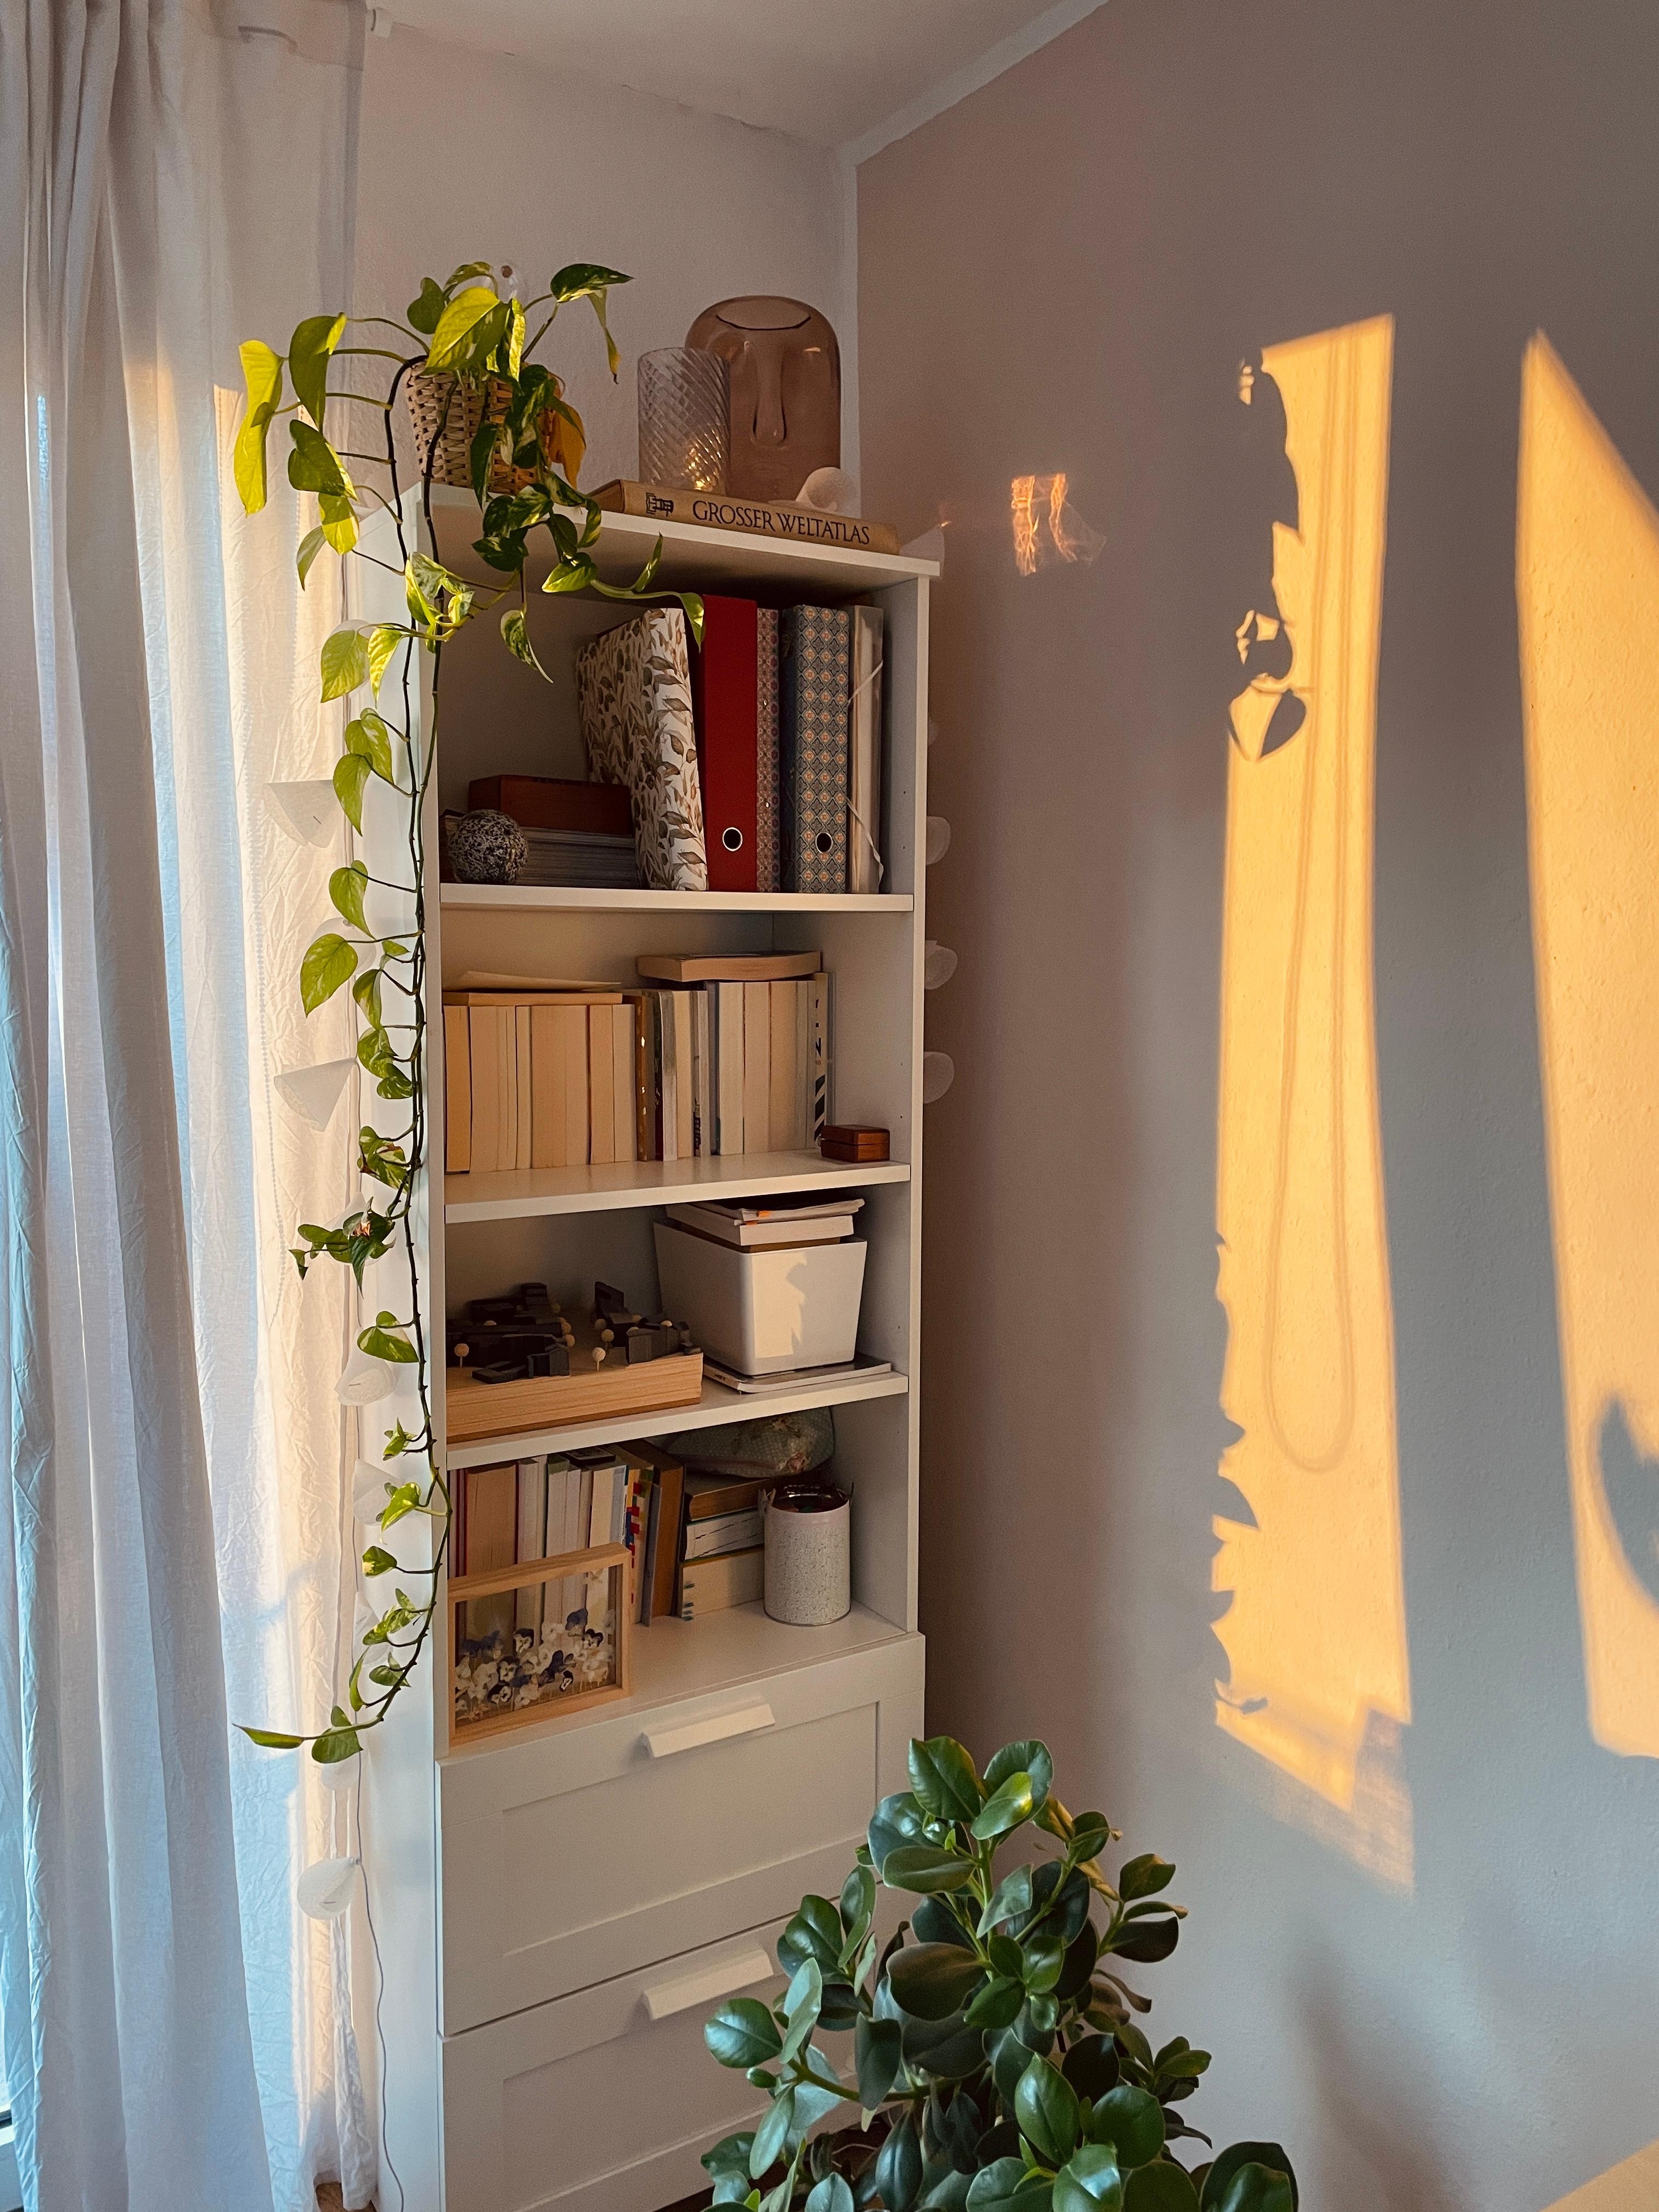 Morgenstund hat Gold im Mund 🌞 #Sonnenstrahlen #Wohnzimmer #Bücherschrank #Pflanzen